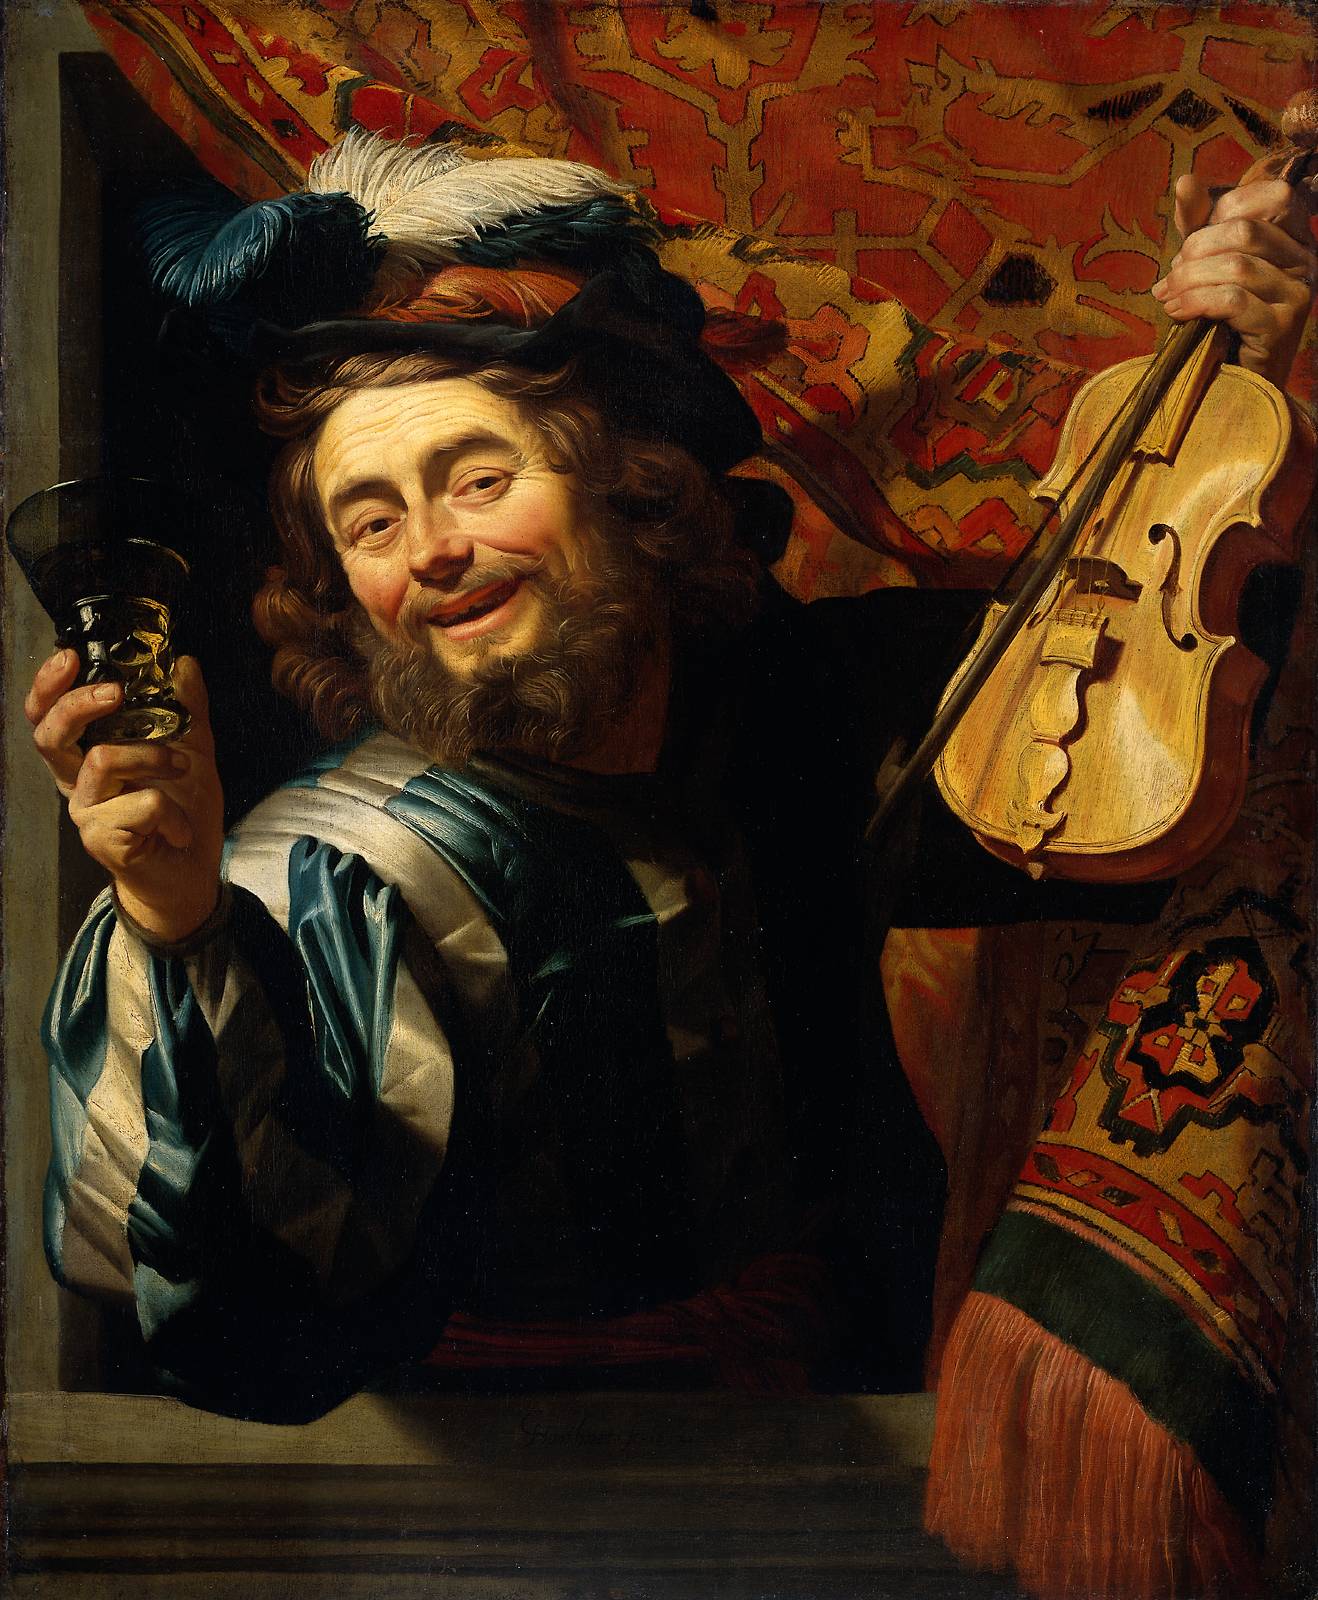 Le Joyeux violoniste by Gerard van Honthorst - 1623 - 107.2 x 88.3 cm 